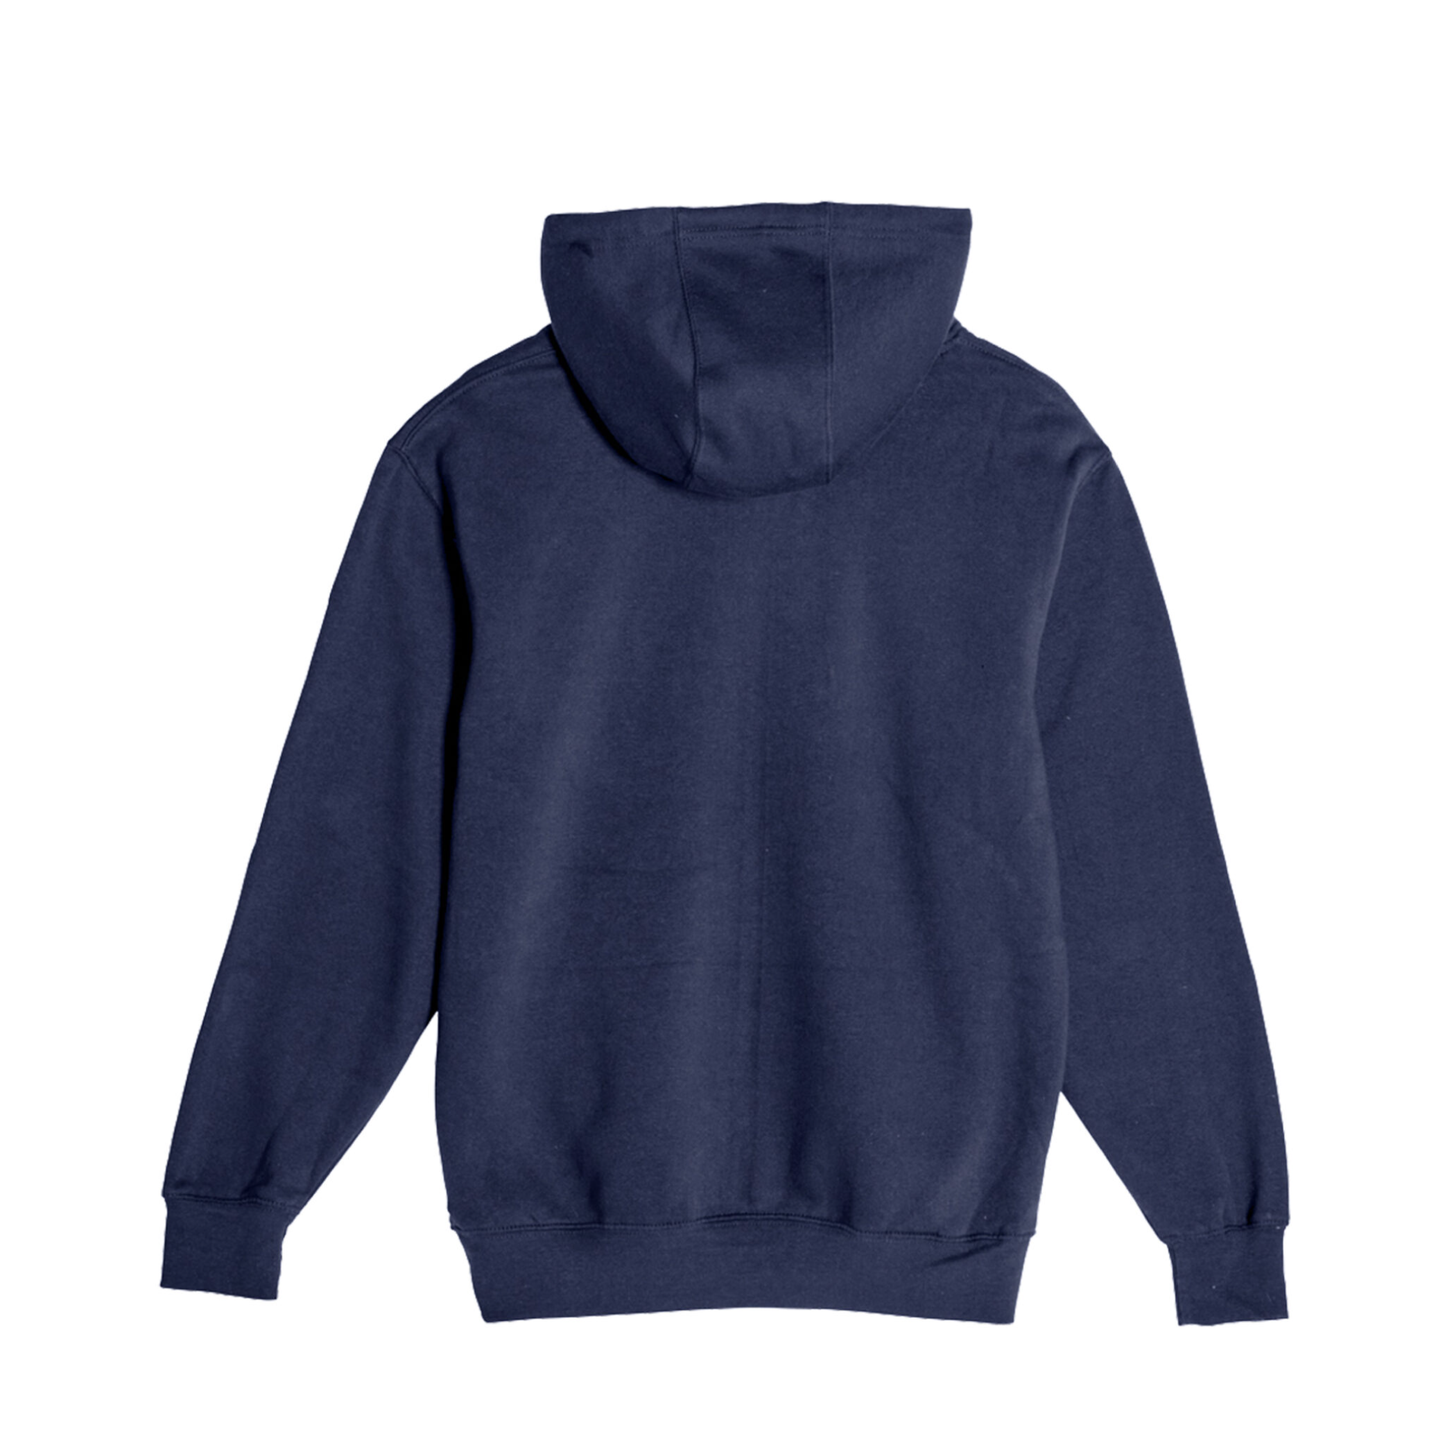 Oswego Lax - Unisex Hooded Pocket Sweatshirt Navy